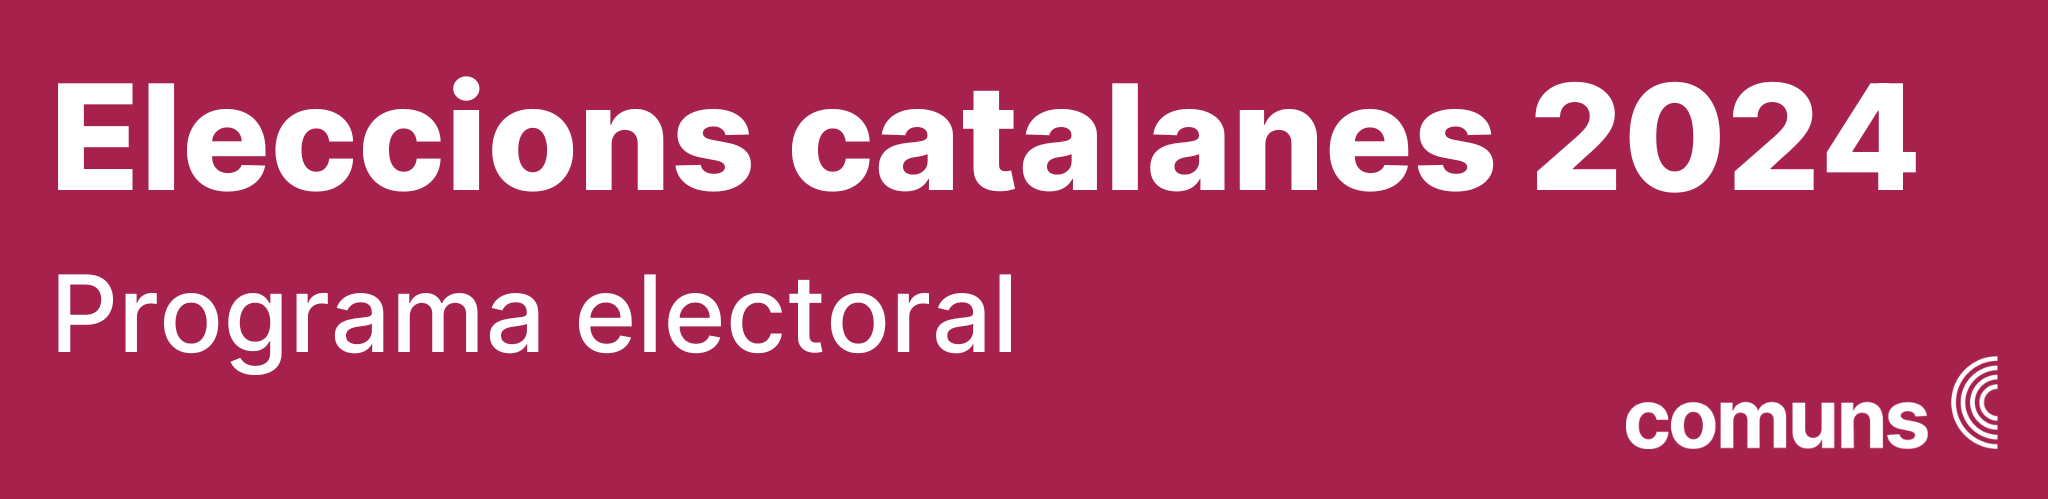 Elaboració del programa electoral de les eleccions catalanes 2024